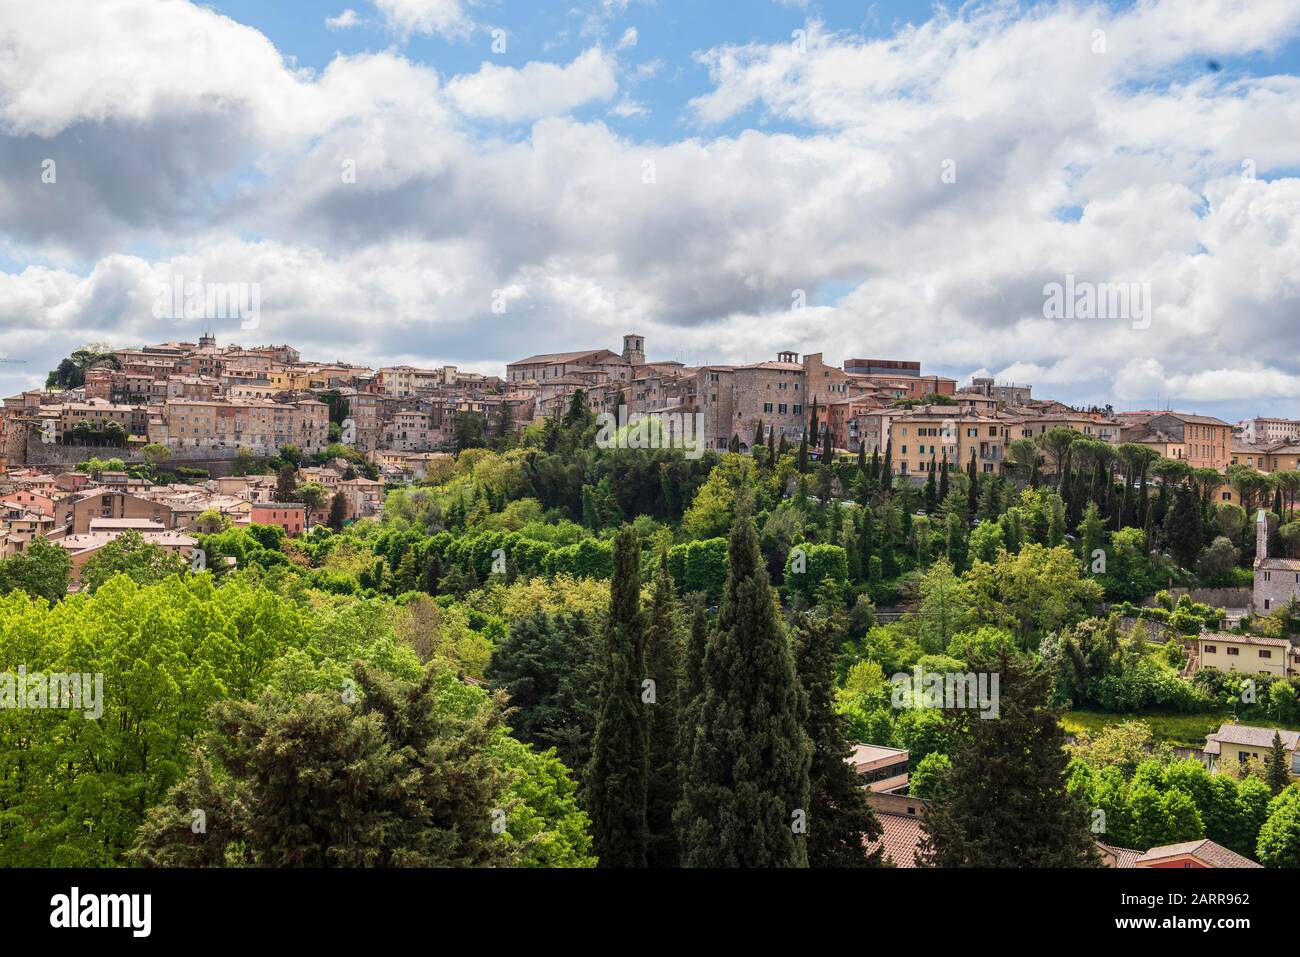 Panorama von Perugia, Umbrien, Italien. Panoramafoto der Stadt Perugia, die auf einem kleinen Hügel inmitten von Grün steht. Stockfoto